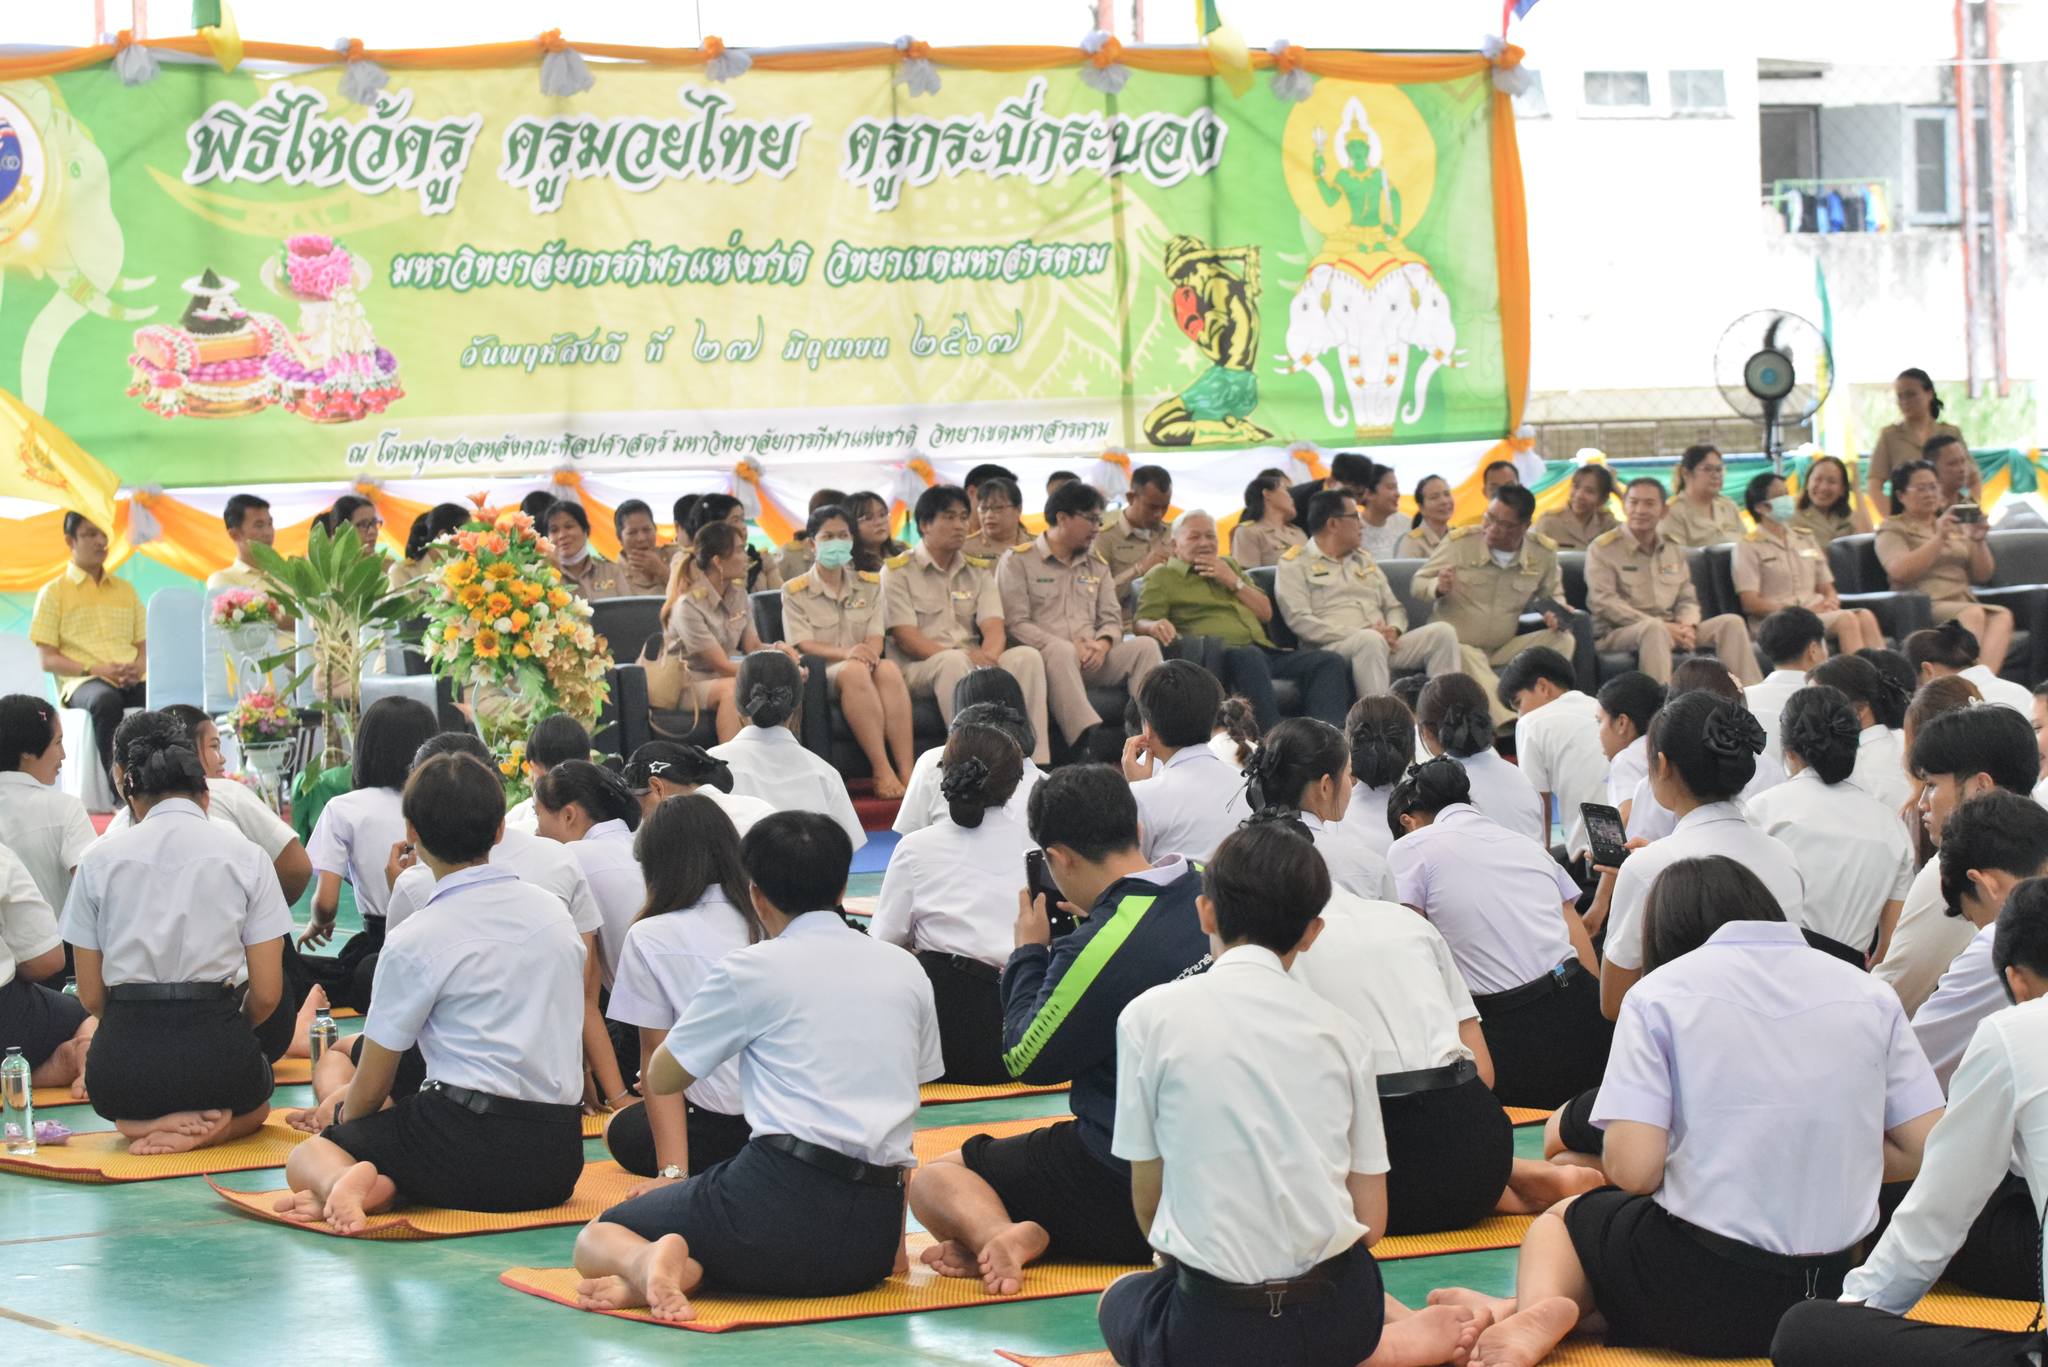 พิธีไหว้ครู ไหว้ครูมวยไทย ไหว้ครูกระบี่กระบอง ประจำปี 2567